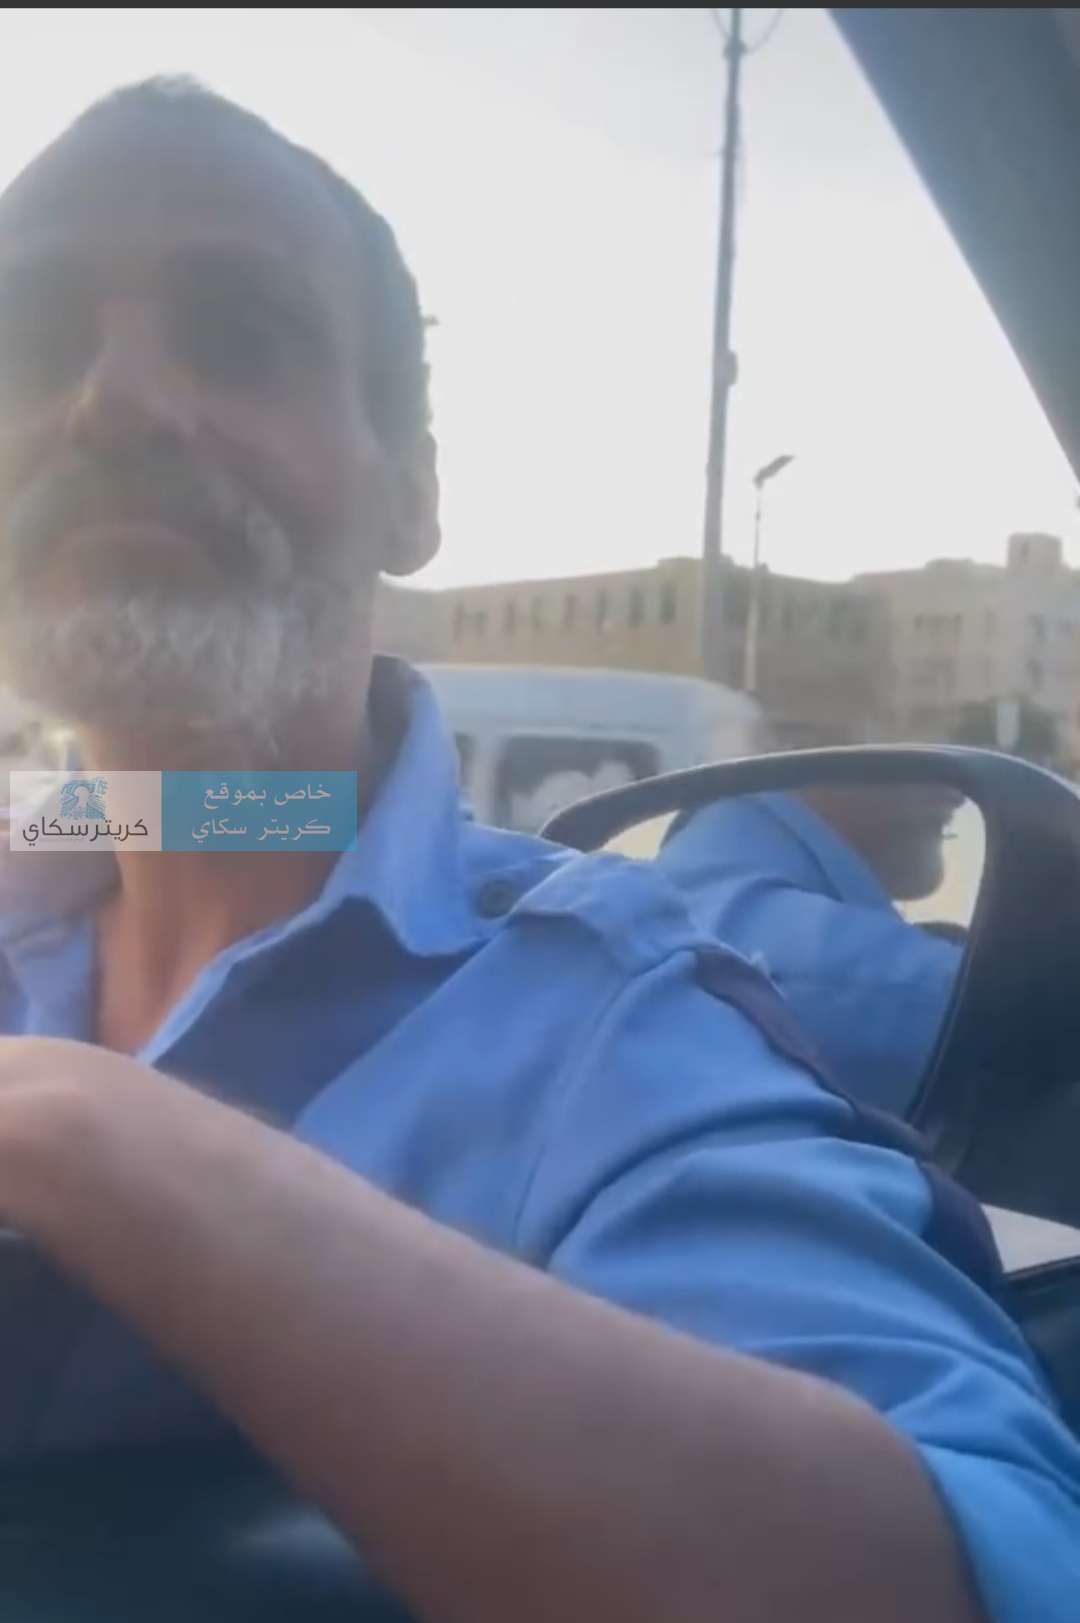 قائد امني يعتدي باعقاب البنادق على رجل مرور في عدن(صورة)